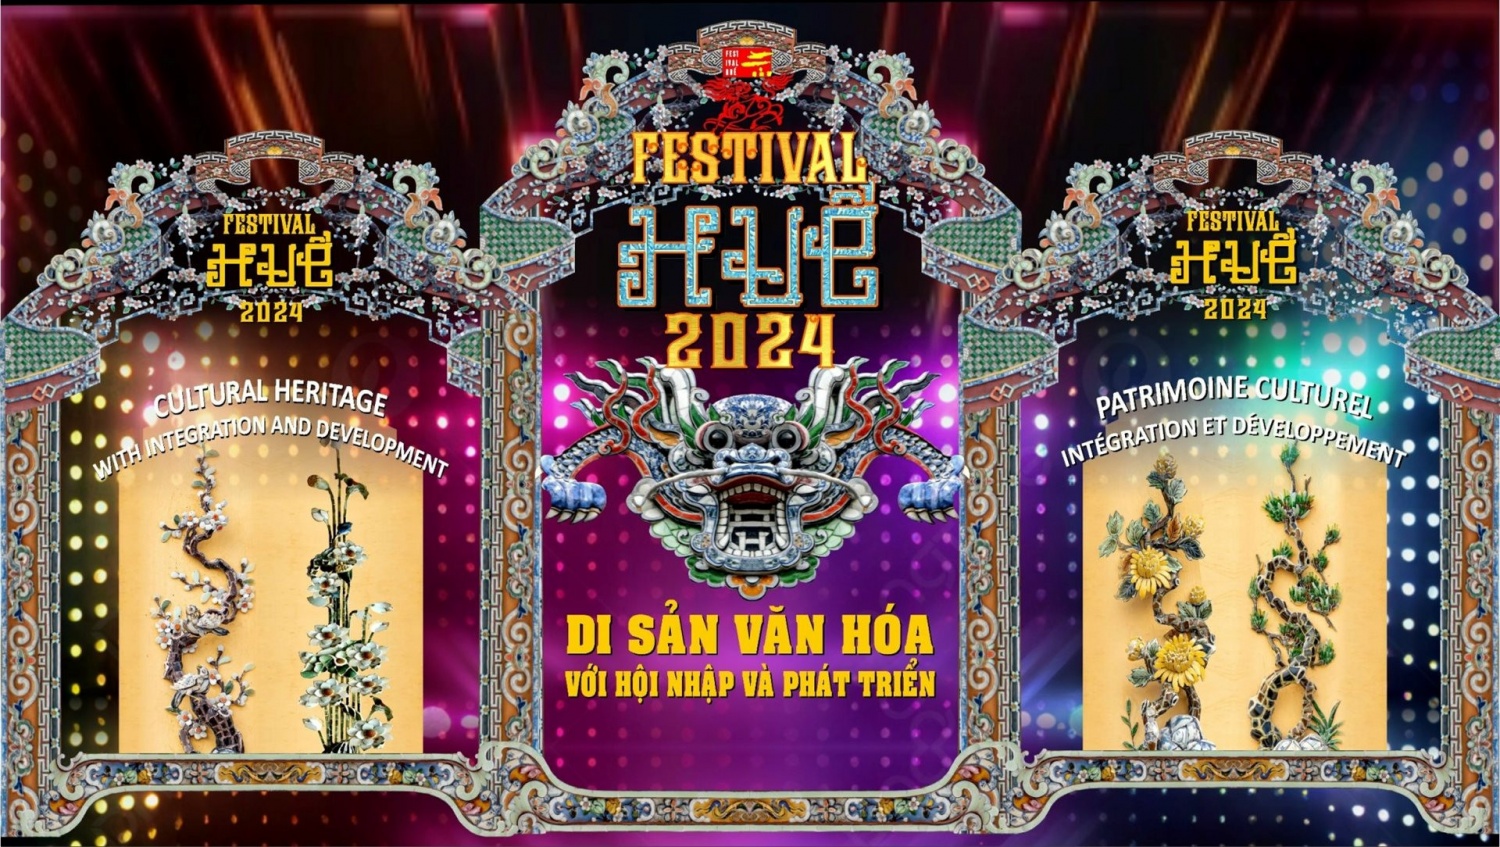 Poster chính thức của Festival Huế 2024.